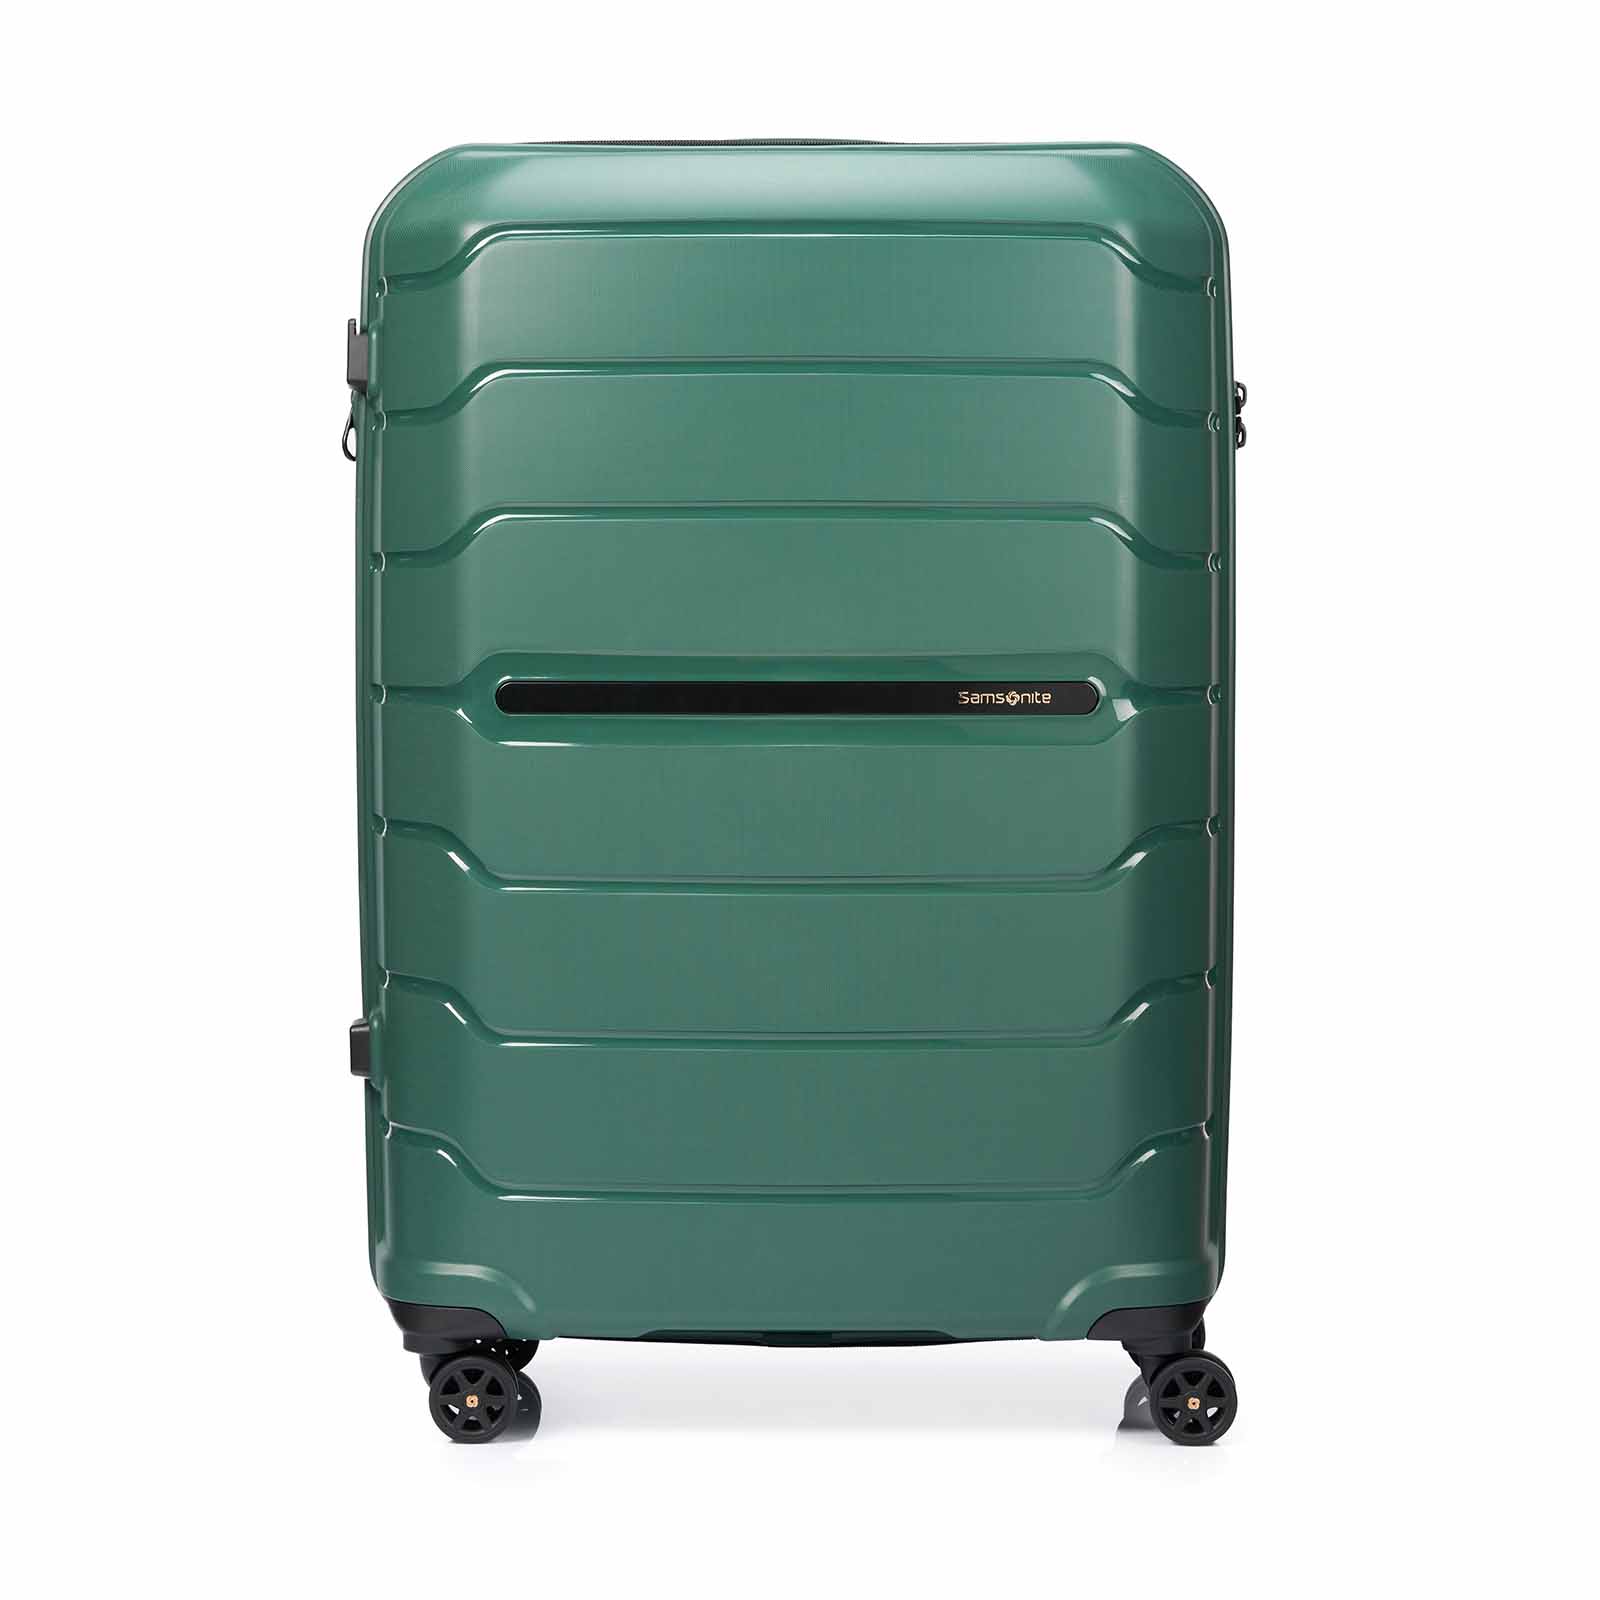 Samsonite-Oc2lite-75cm-Suitcase-Urban-Green-Front